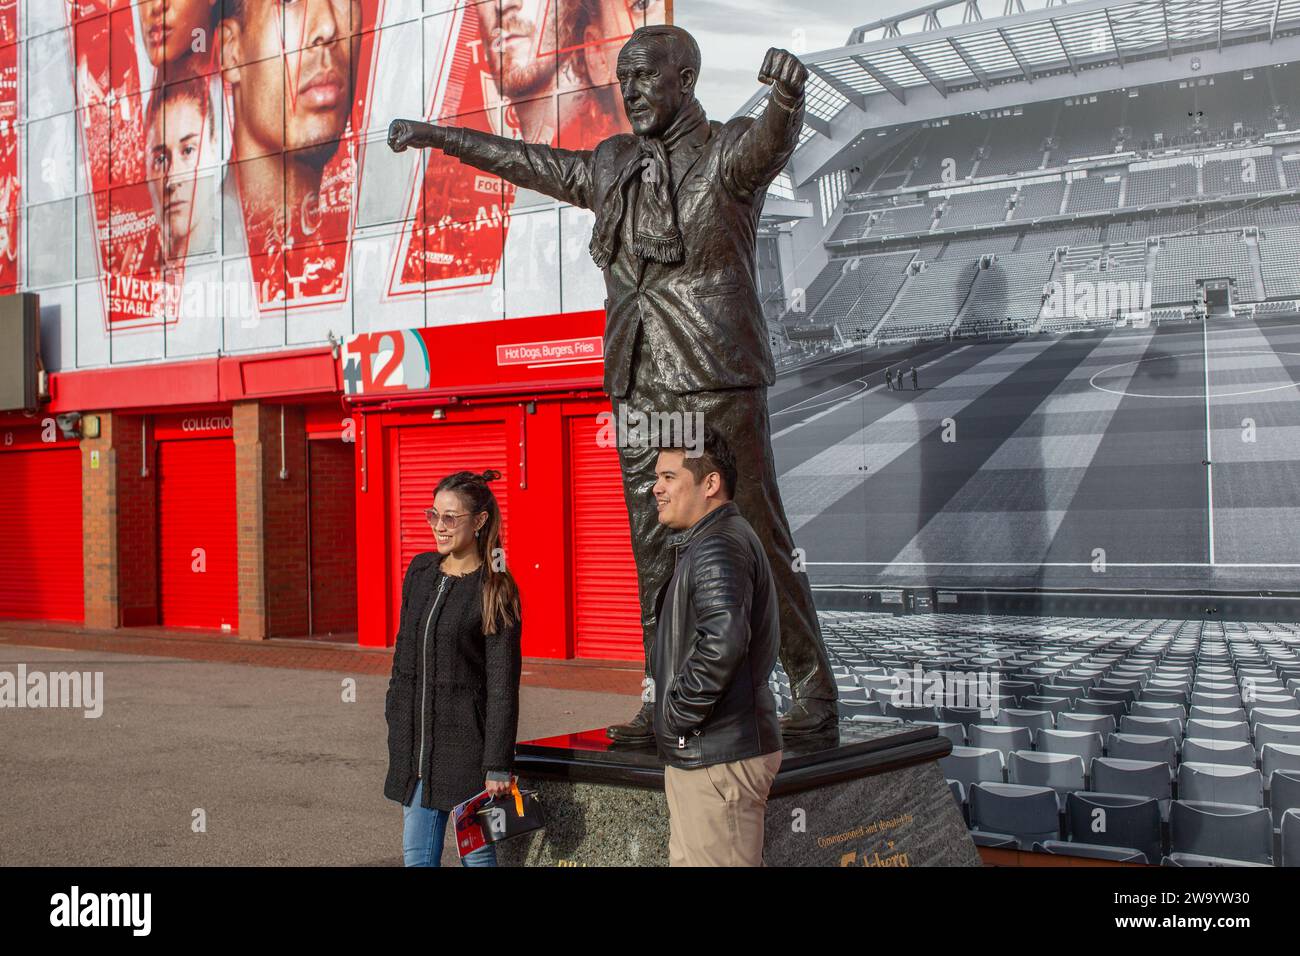 Bill Shankey Statue mit Fans im Anfield Stadion, Heimstadion des Liverpool Football Club, einer der englischen Premier League F.C. Stockfoto